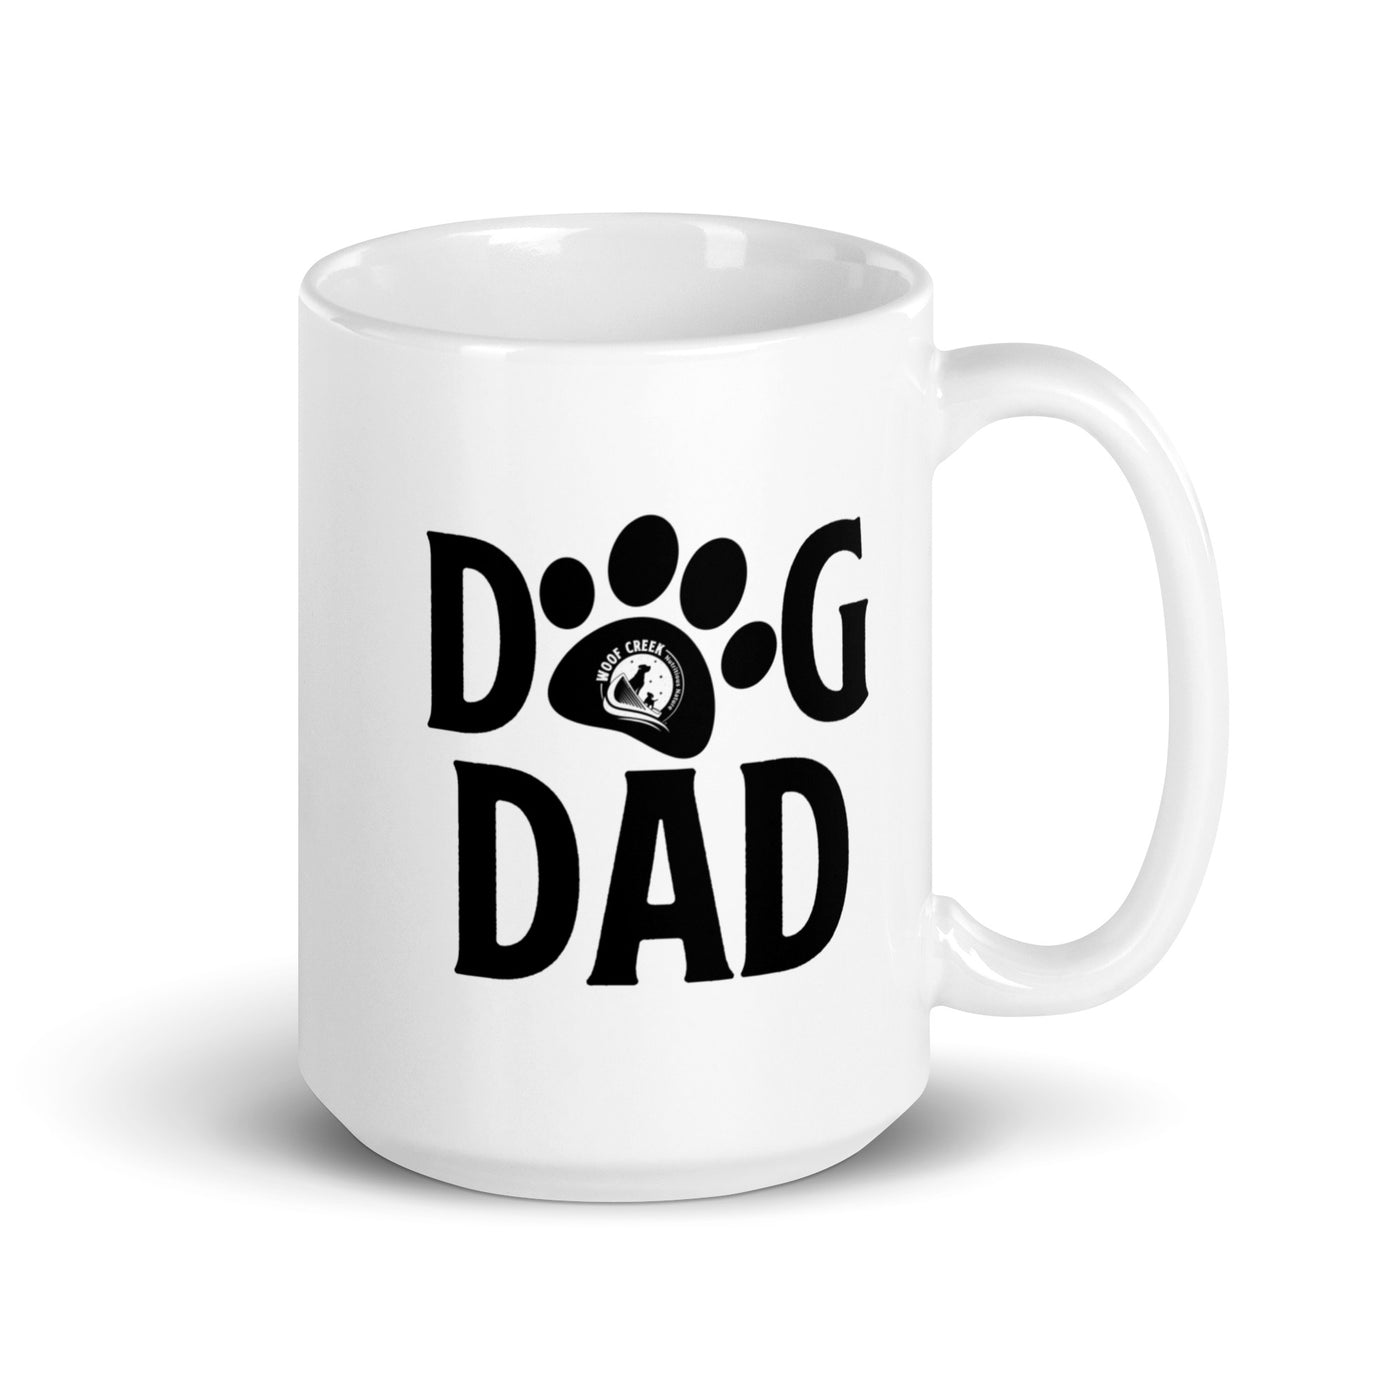 Woof Creek Dog Dad Mug | White Glossy 15 oz. - Woof Creek Dog Wellness